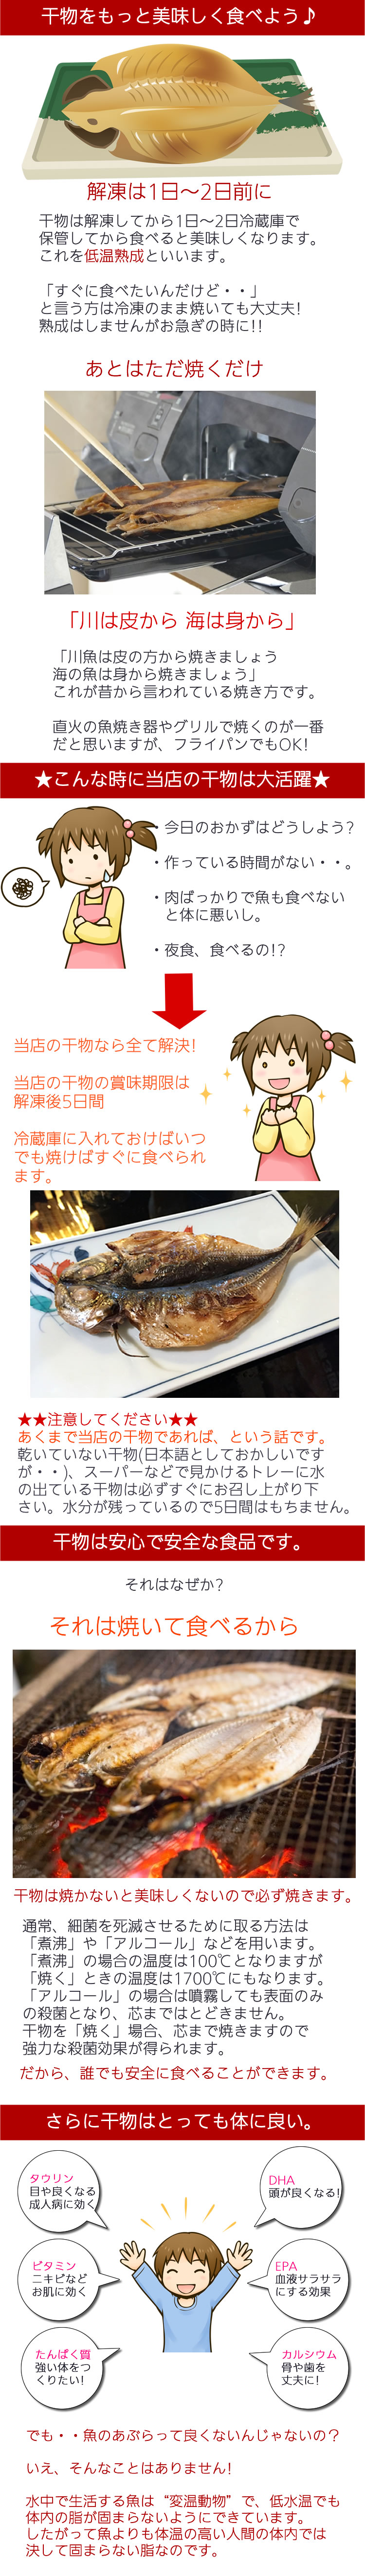 国産 さんま干物 1枚 秋刀魚の干物ってこんなに美味いんだ の通販 定番の干物を1枚ずつ販売してます 小田原ひもの 山市干物専門店